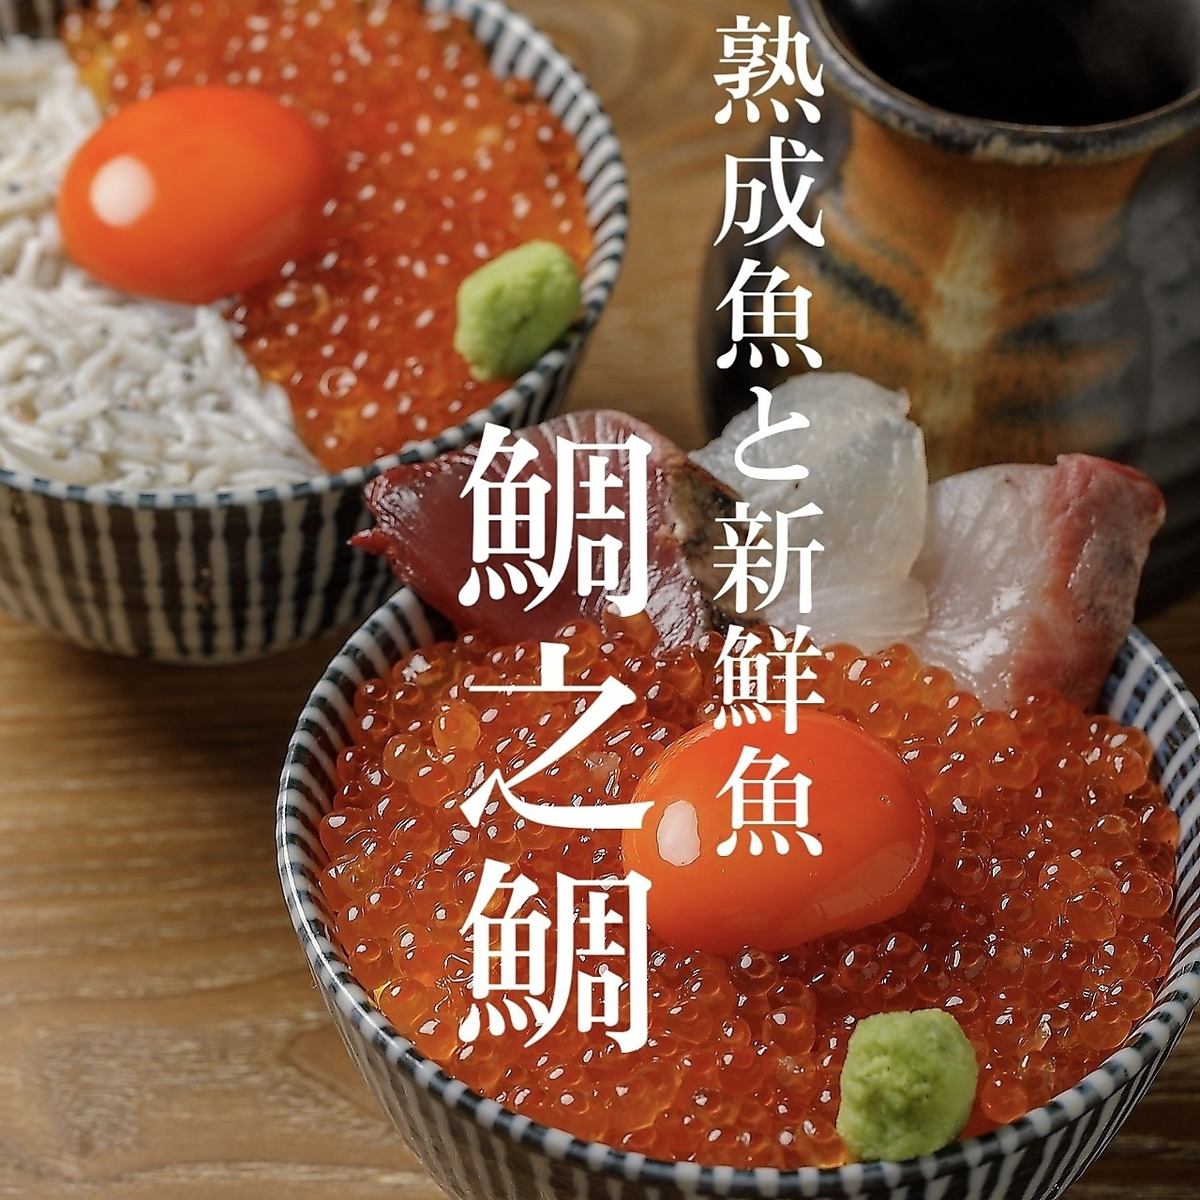 熟魚×鮮魚拼盤659日圓起，丹澤黑龍等當地酒也從549日圓起。